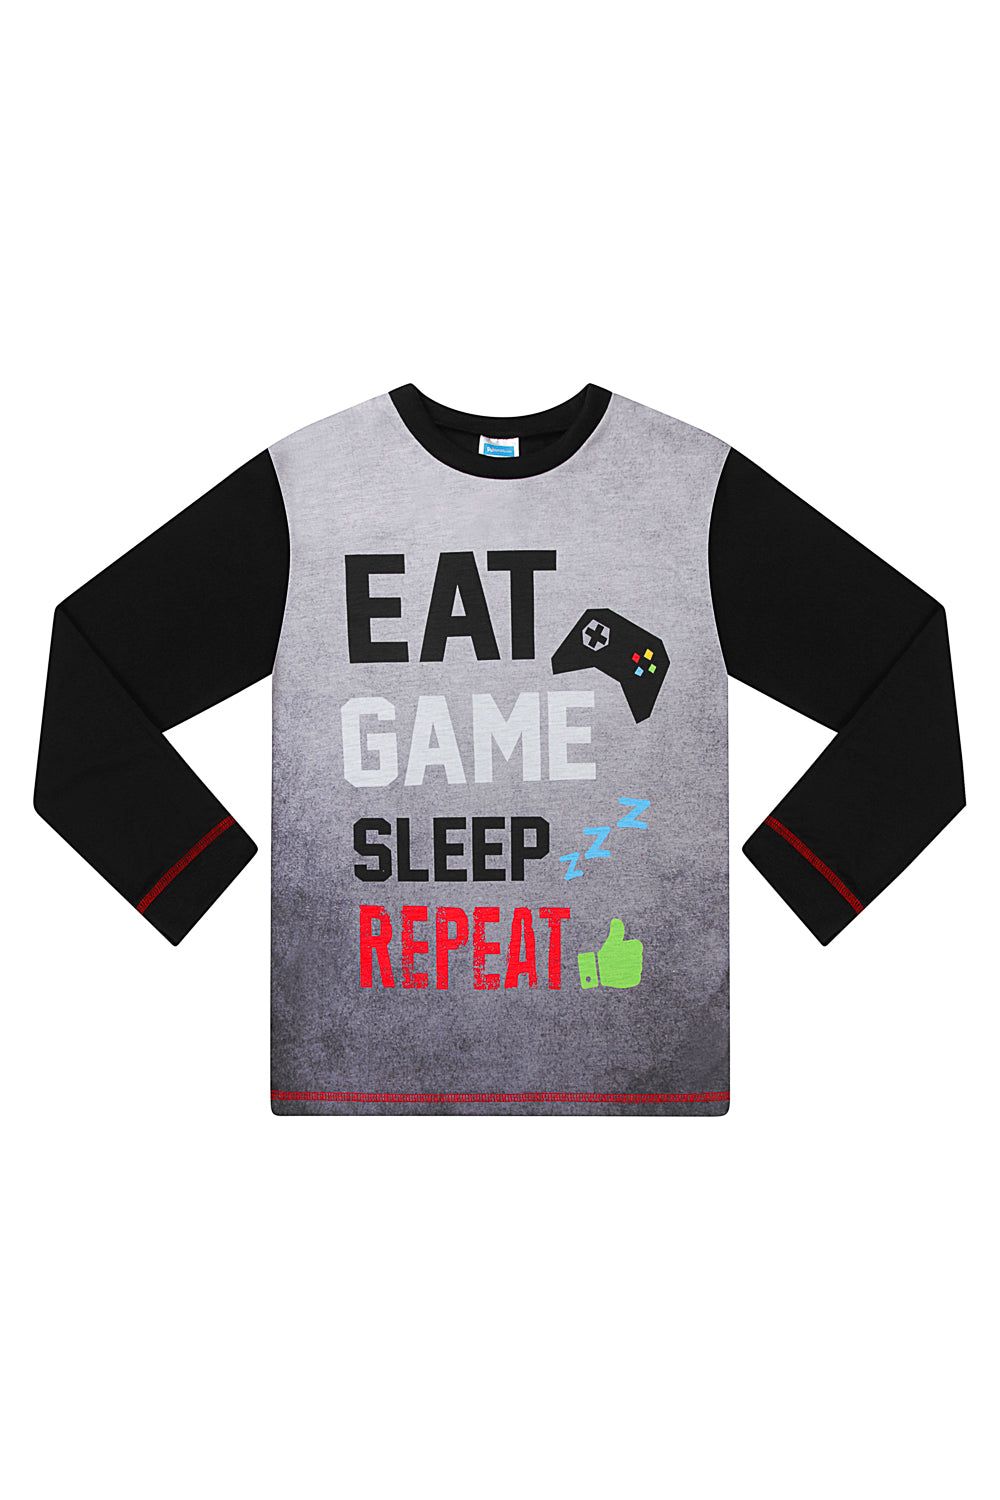 Boys Eat Game Sleep Repeat Long Gaming Pajamas - Pyjamas.com